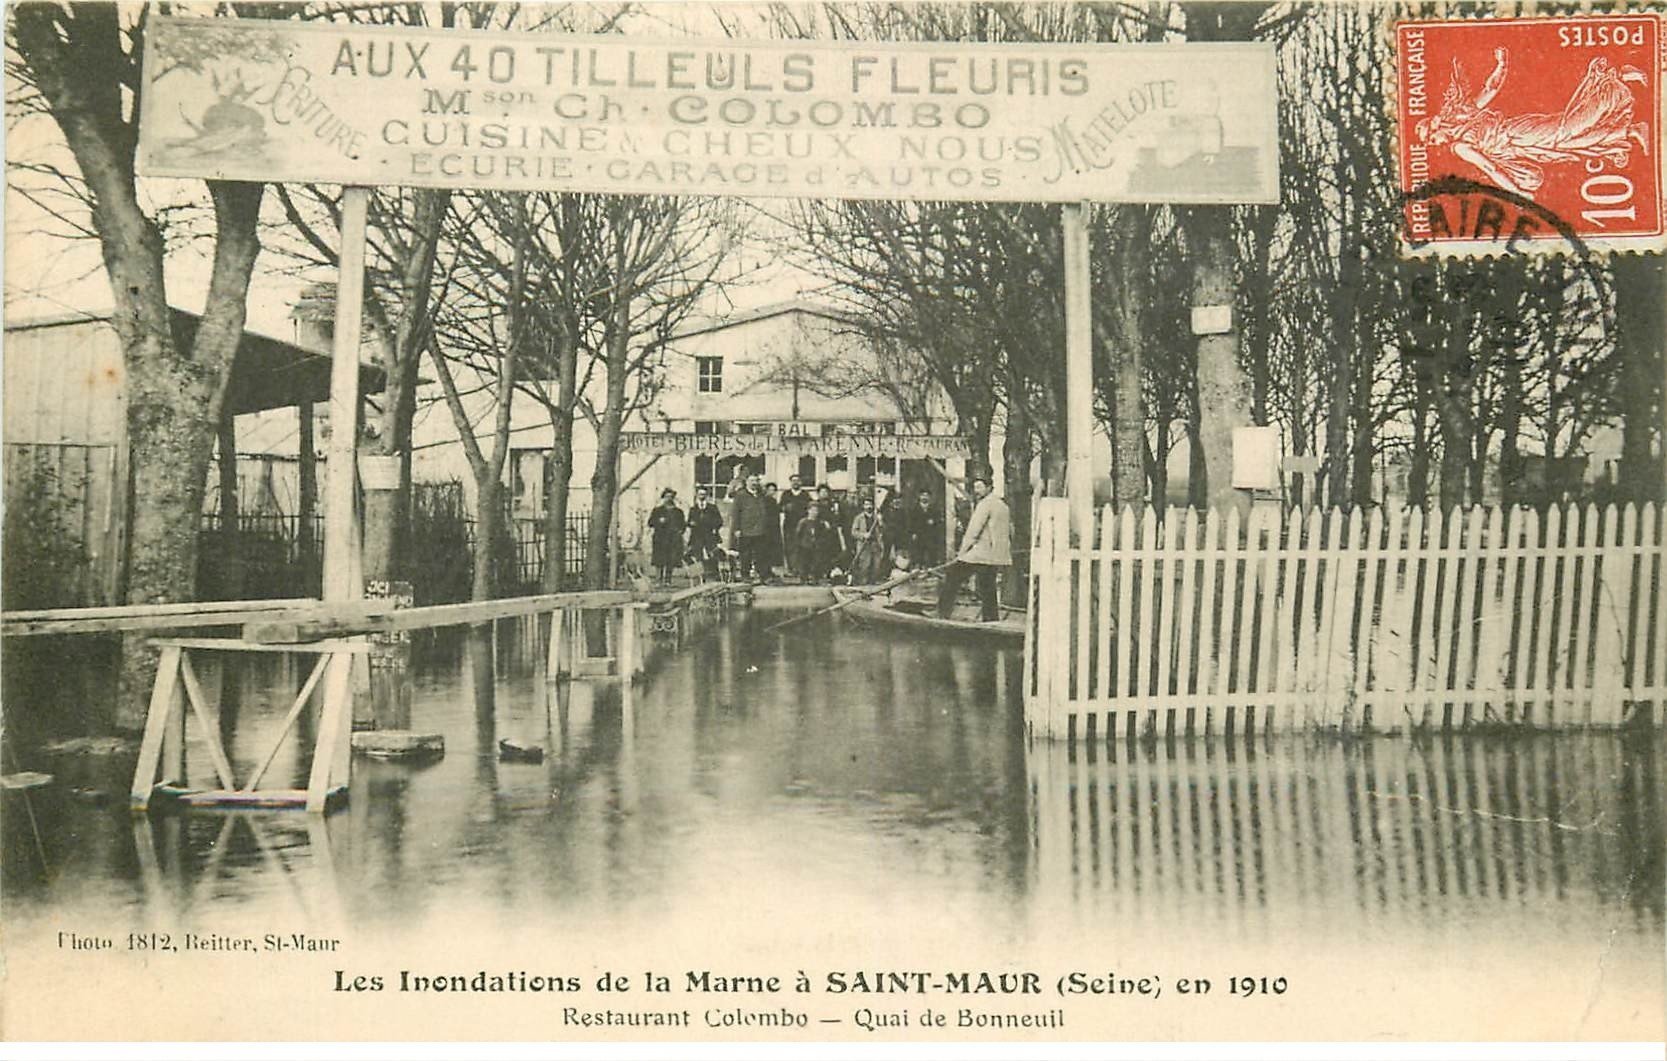 Inondation et Crue de 1910. SAINT-MAUR 94. Quai de Bonneuil Restaurant Colombo Aux 40 Tilleuls fleuris